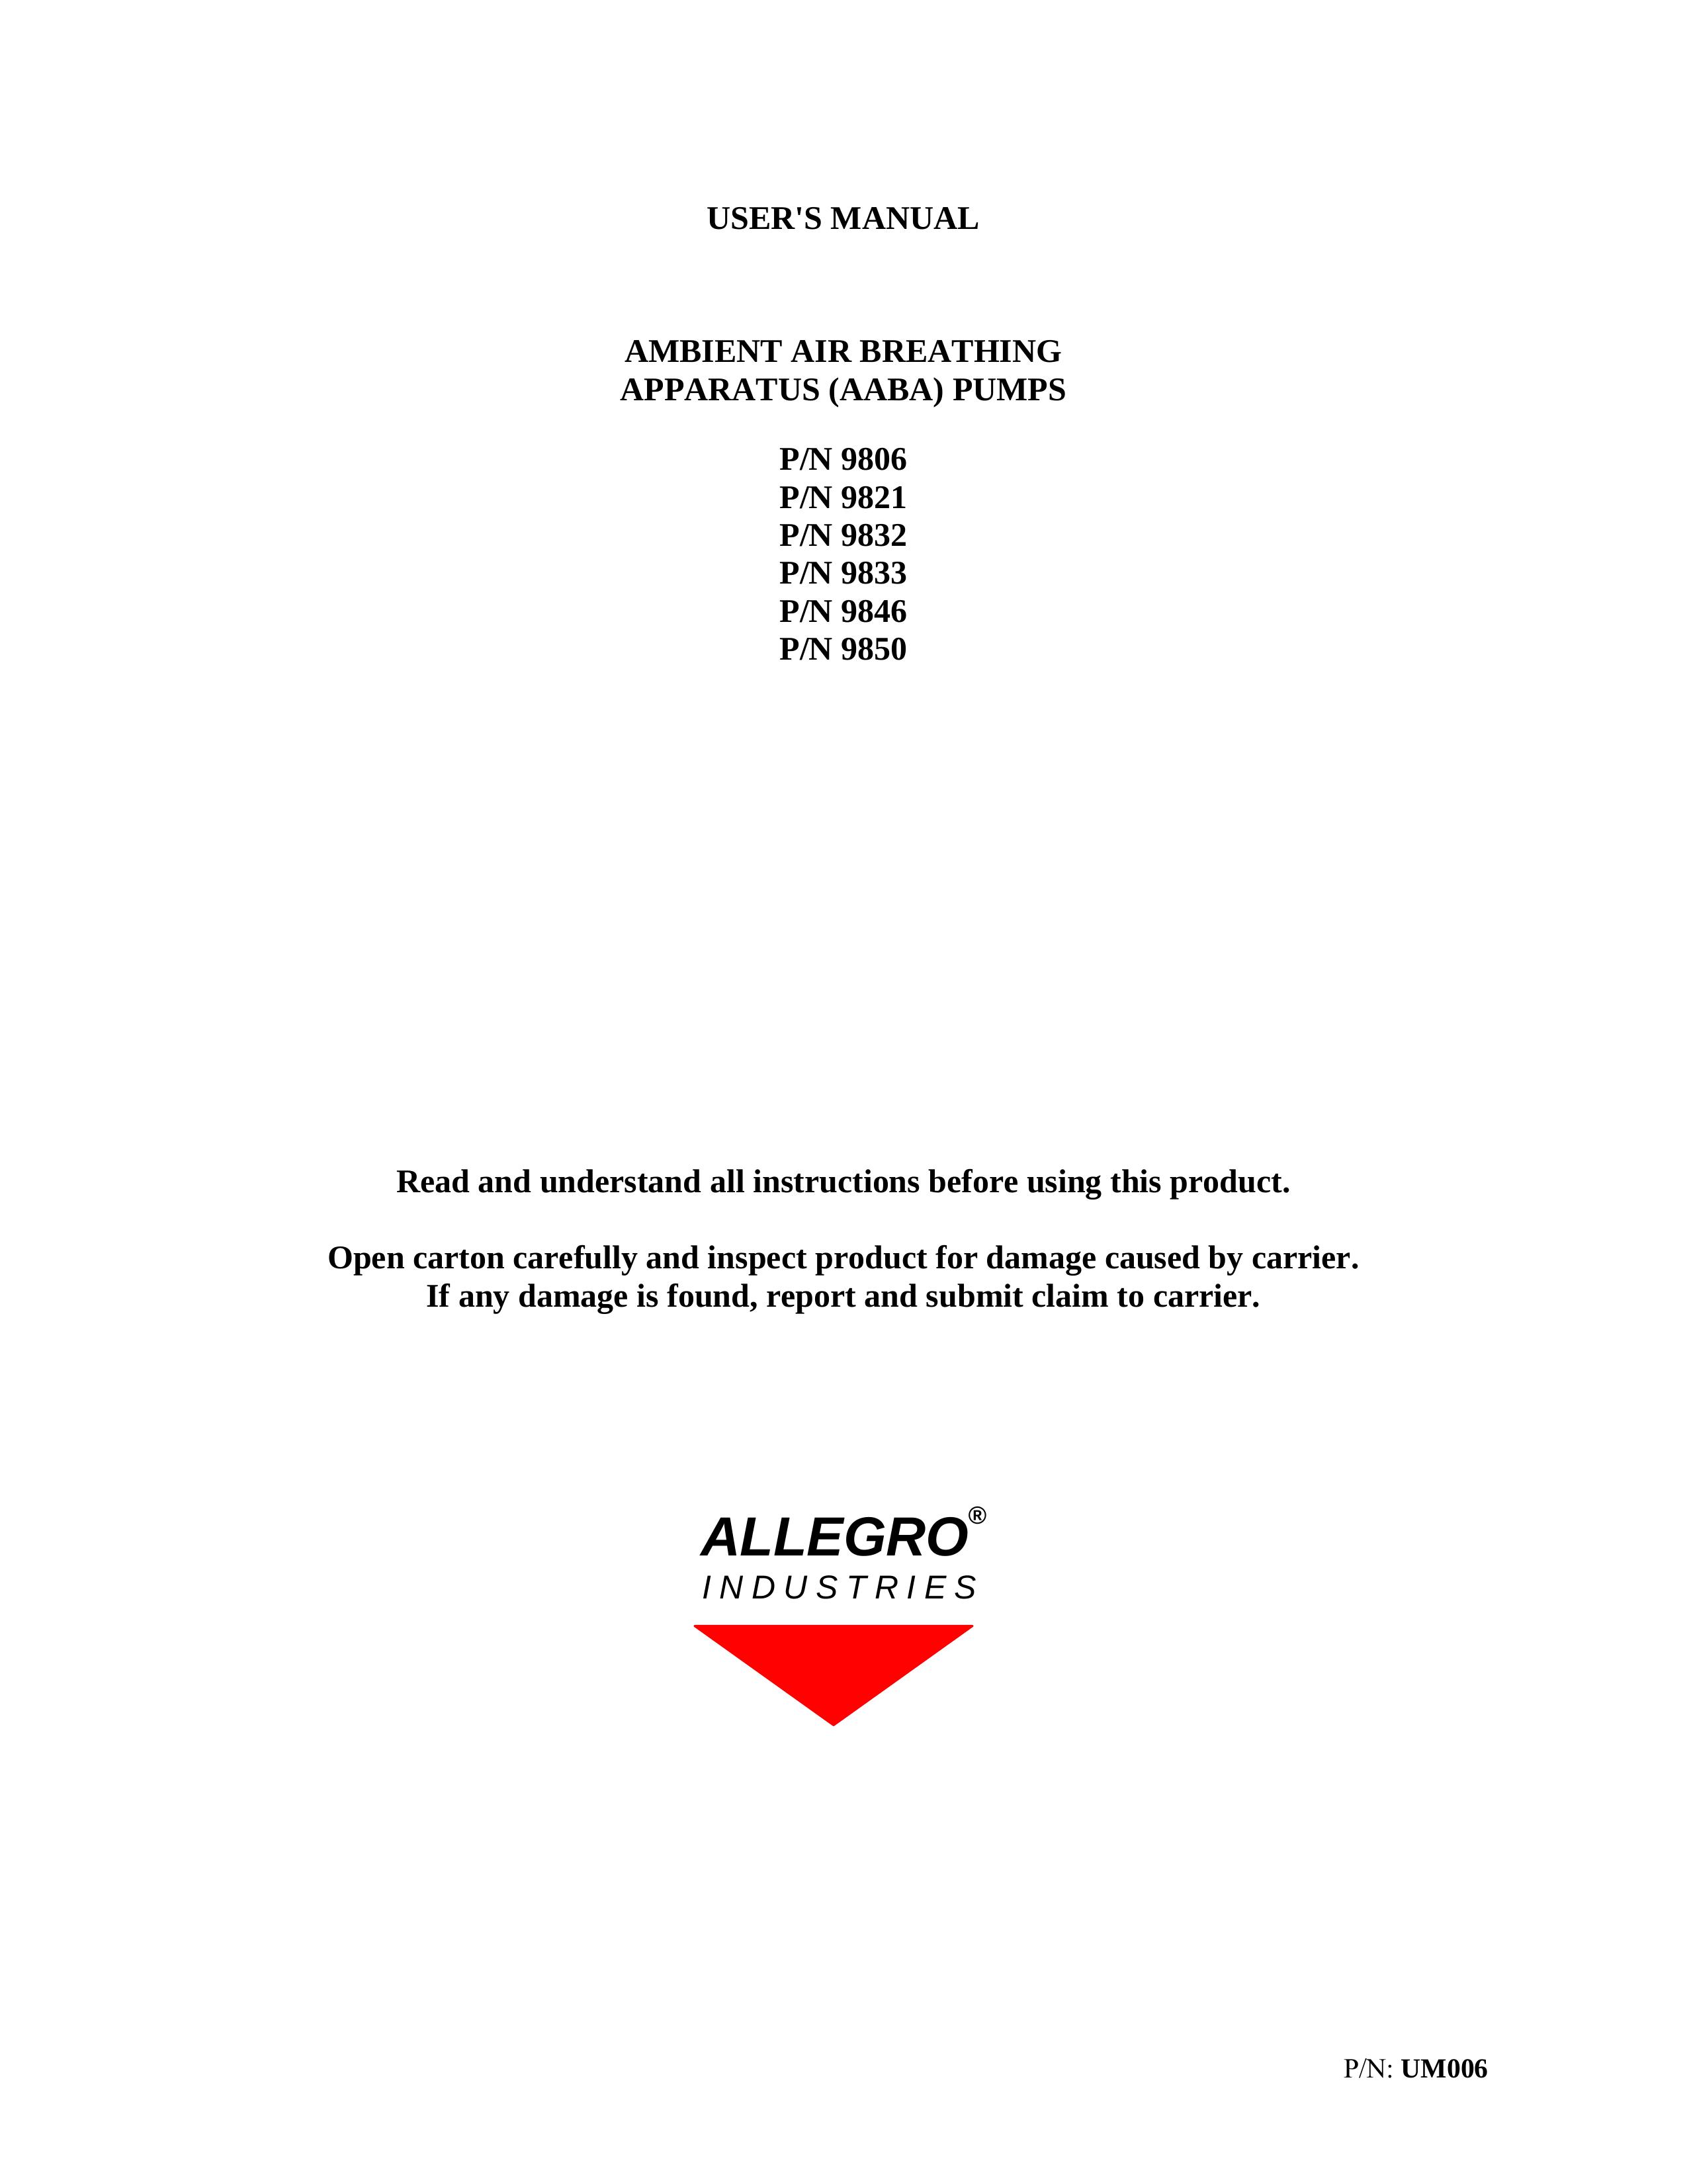 Allegro Industries 9846 Oxygen Equipment User Manual